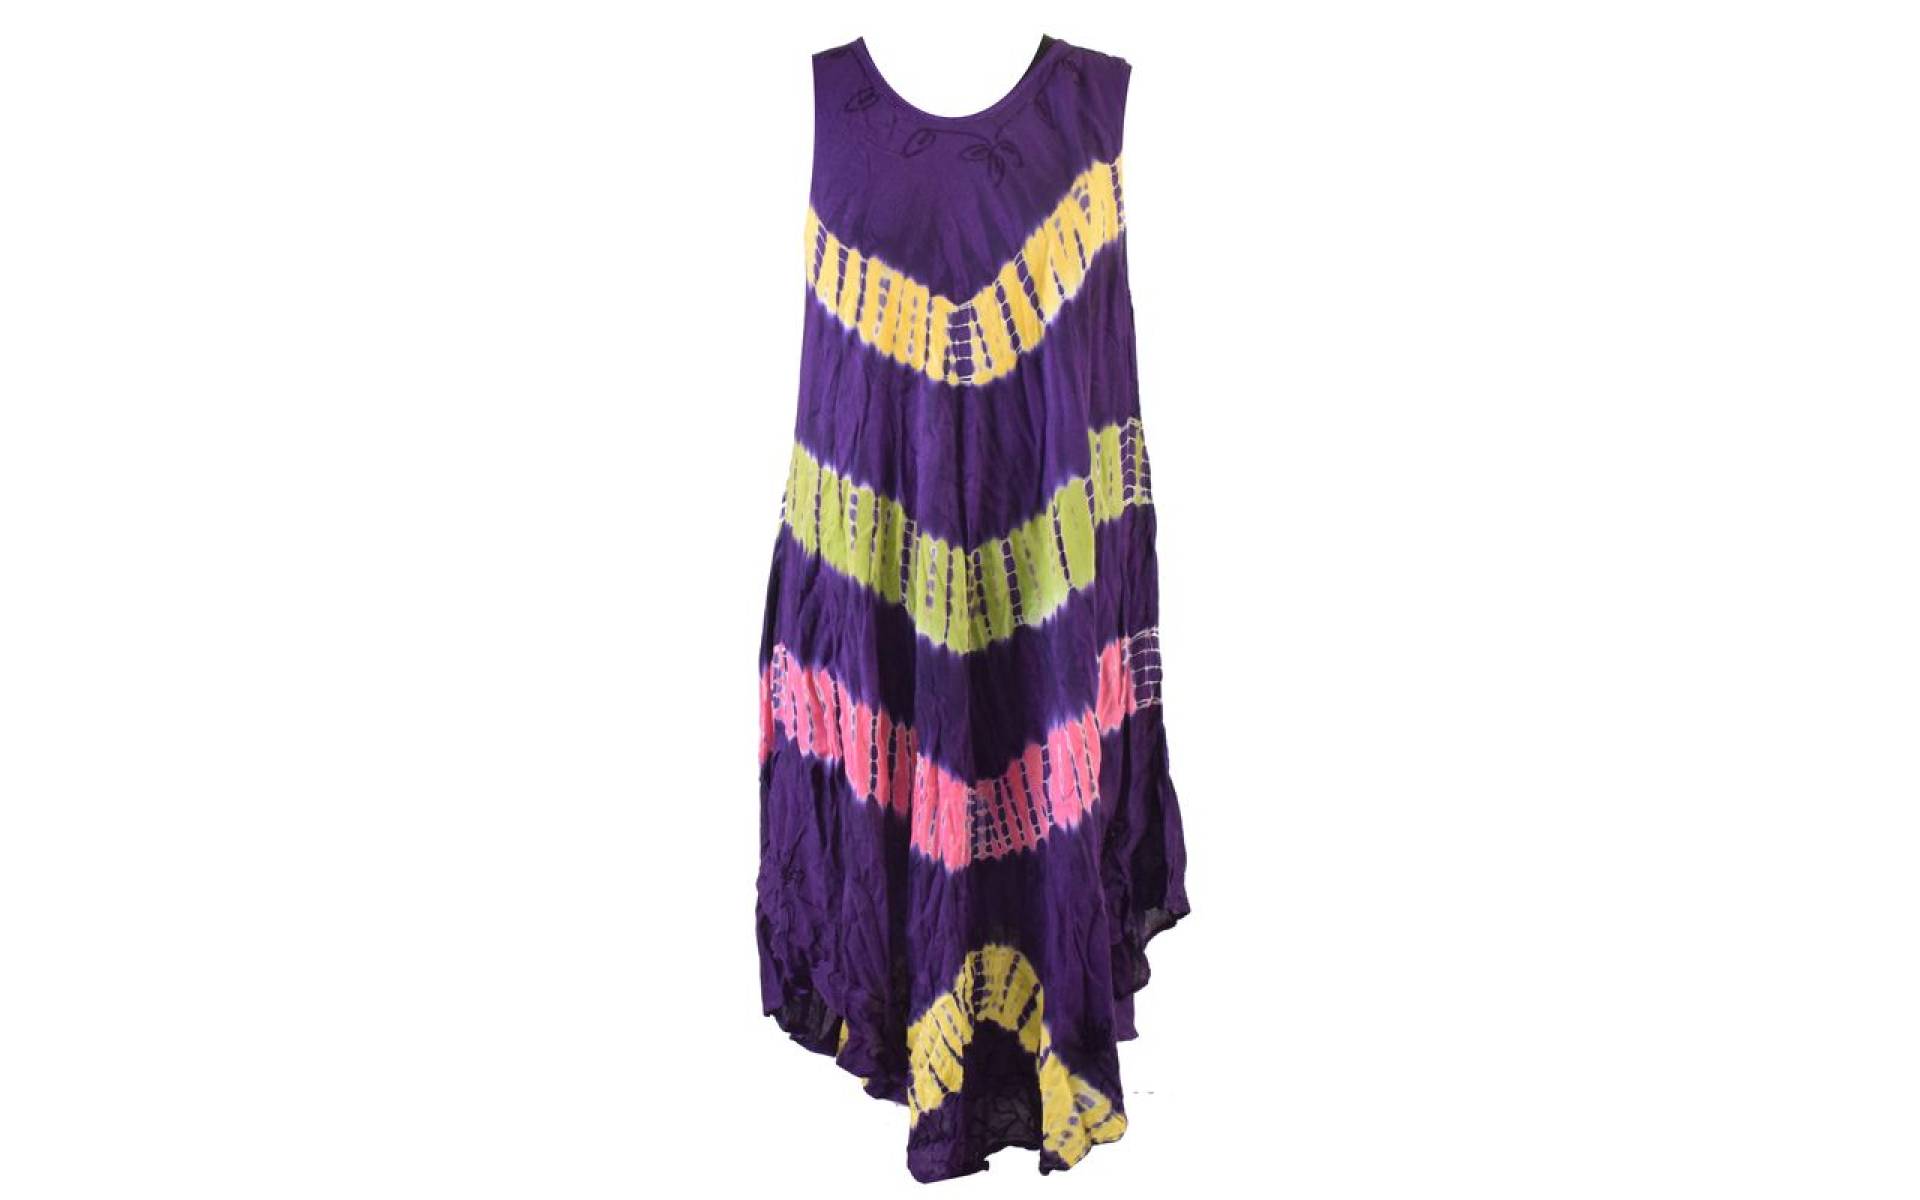 Krátke fialové šaty bez rukávov, farebné batikované pruhy, výšivka